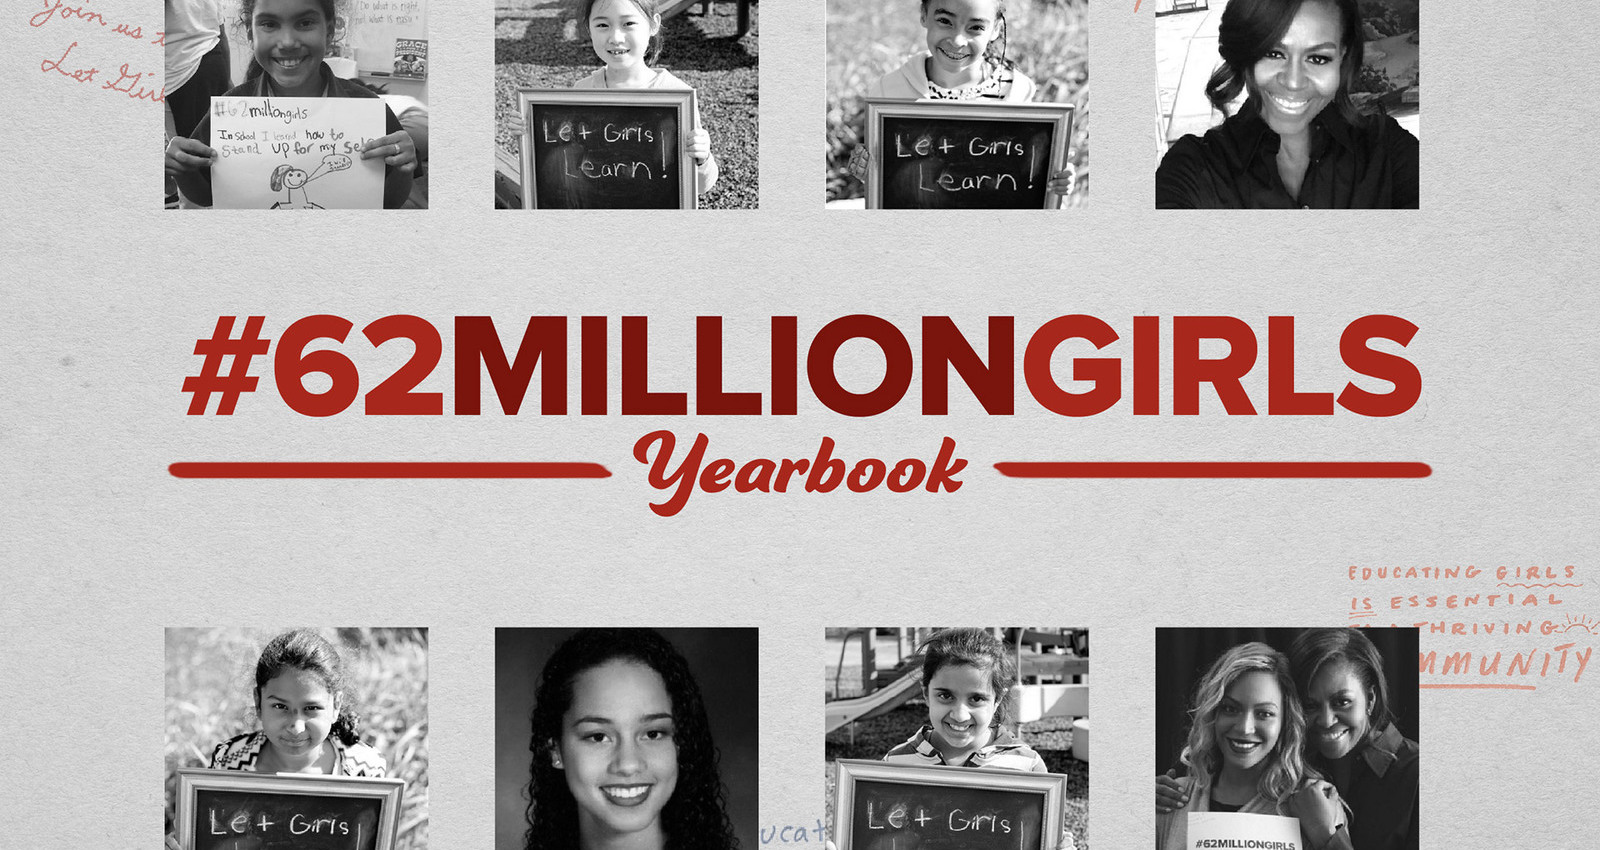 The #62MillionGirls Yearbook